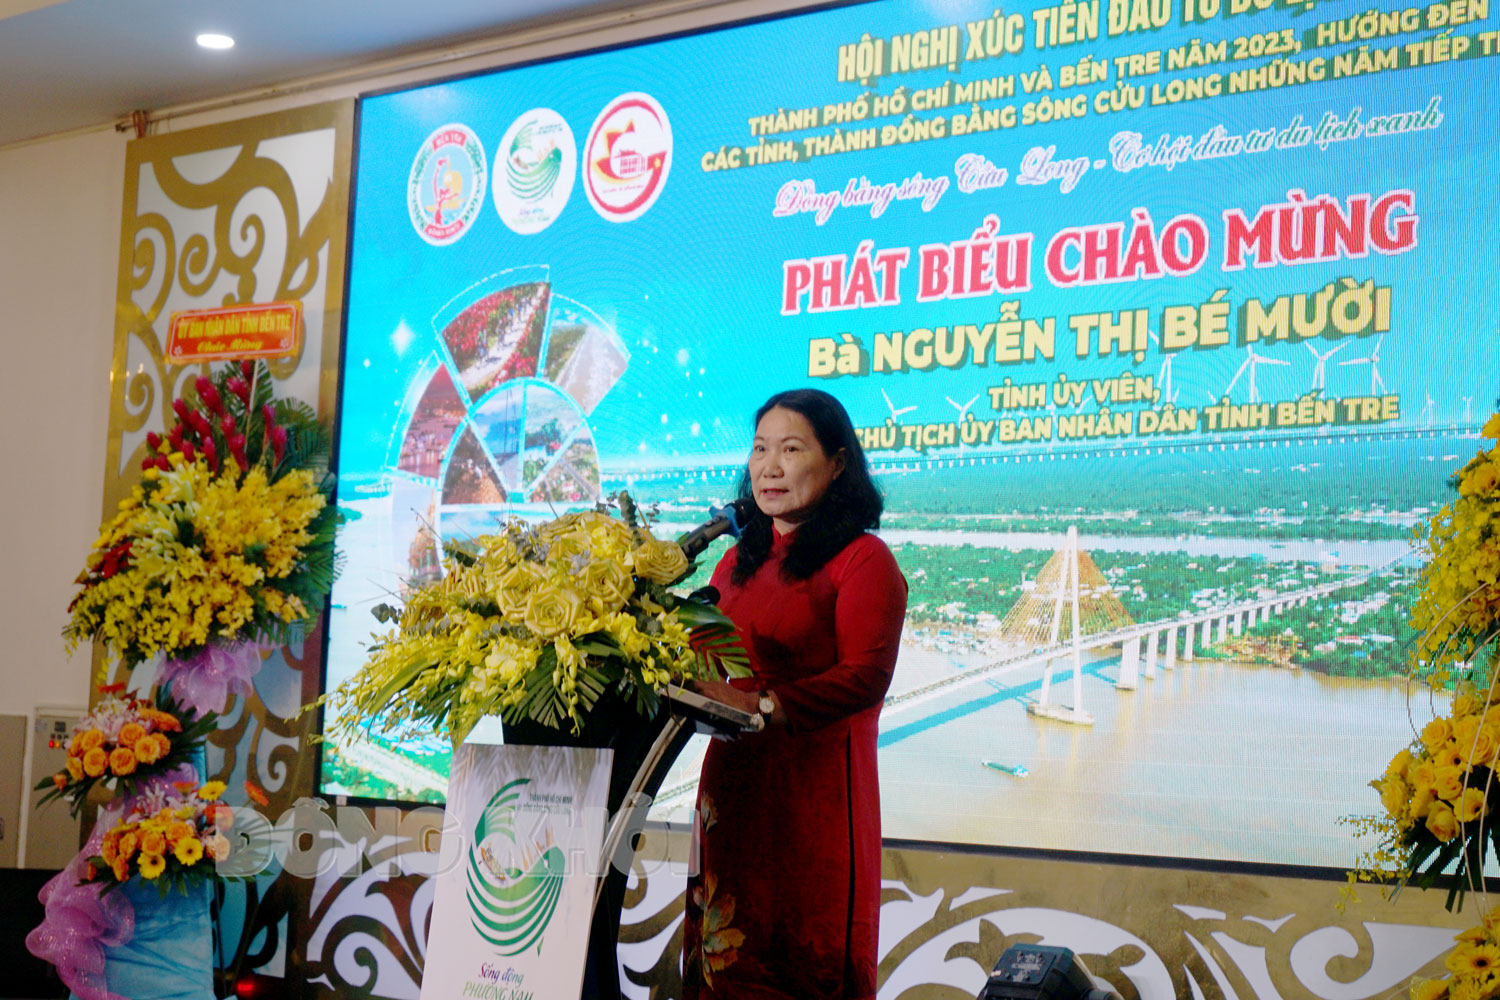 Hội nghị xúc tiến đầu tư du lịch TP. Hồ Chí Minh và Bến Tre năm 2023 - Ảnh 2.